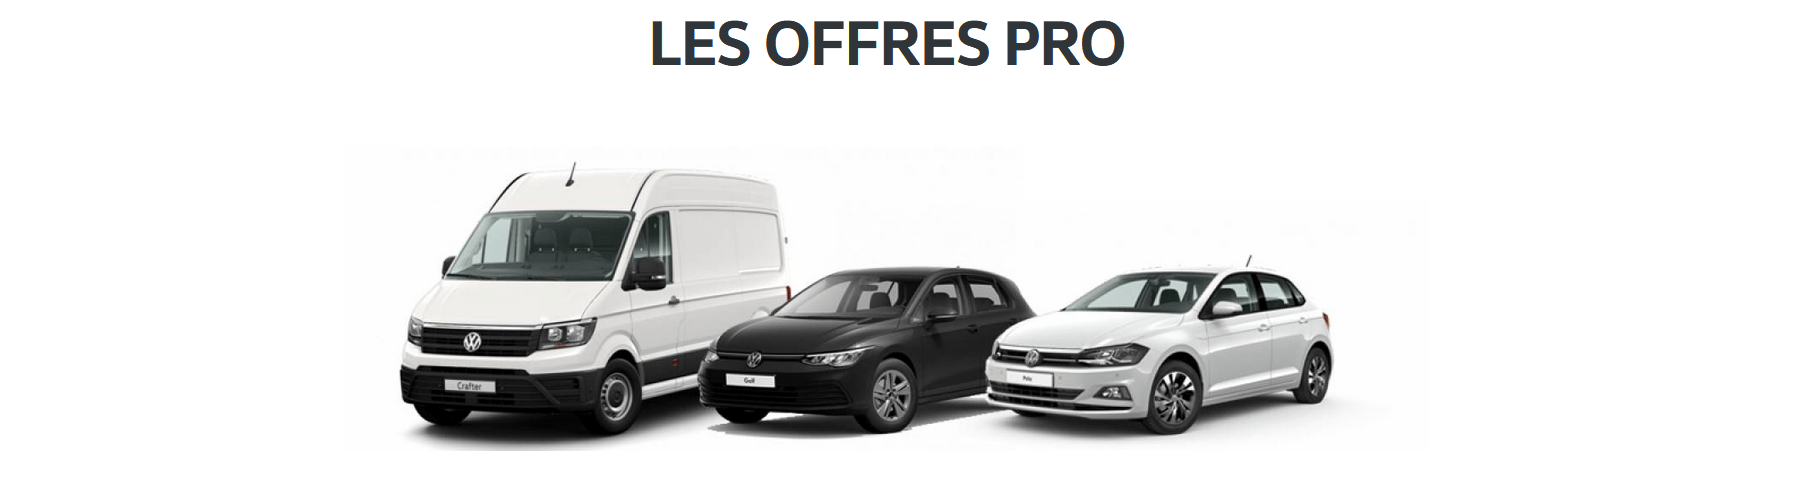 Volkswagen Utilitaires Bruay-la-Buissière AUTO-EXPO - Les offres exclusives chez votre partenaire VGRF Fleet Hauts-de-France